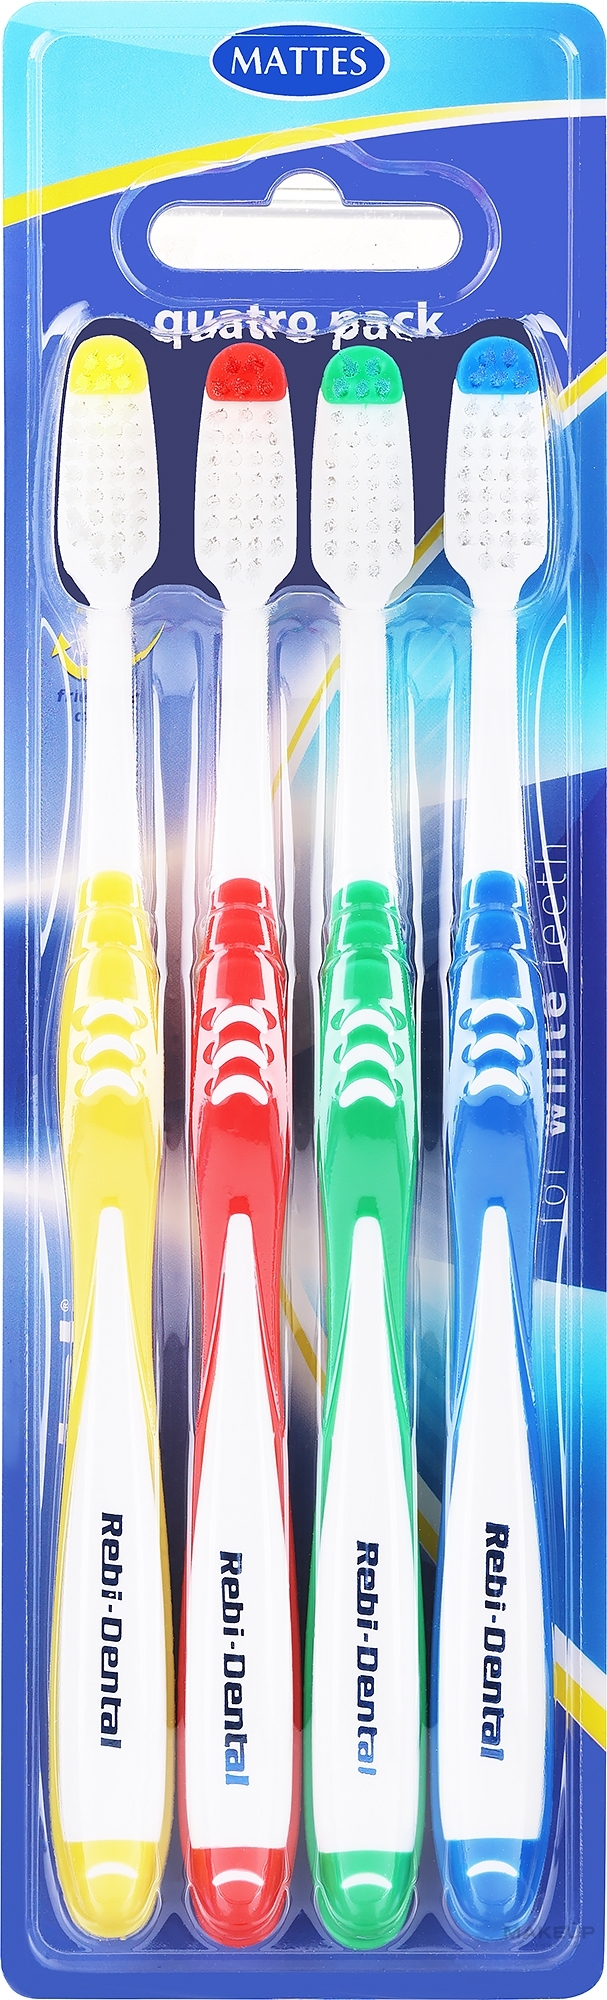 Набор зубных щеток Rebi-Dental M458, средней жесткости, красная+желтая+зеленая+синяя - Mattes — фото 4шт